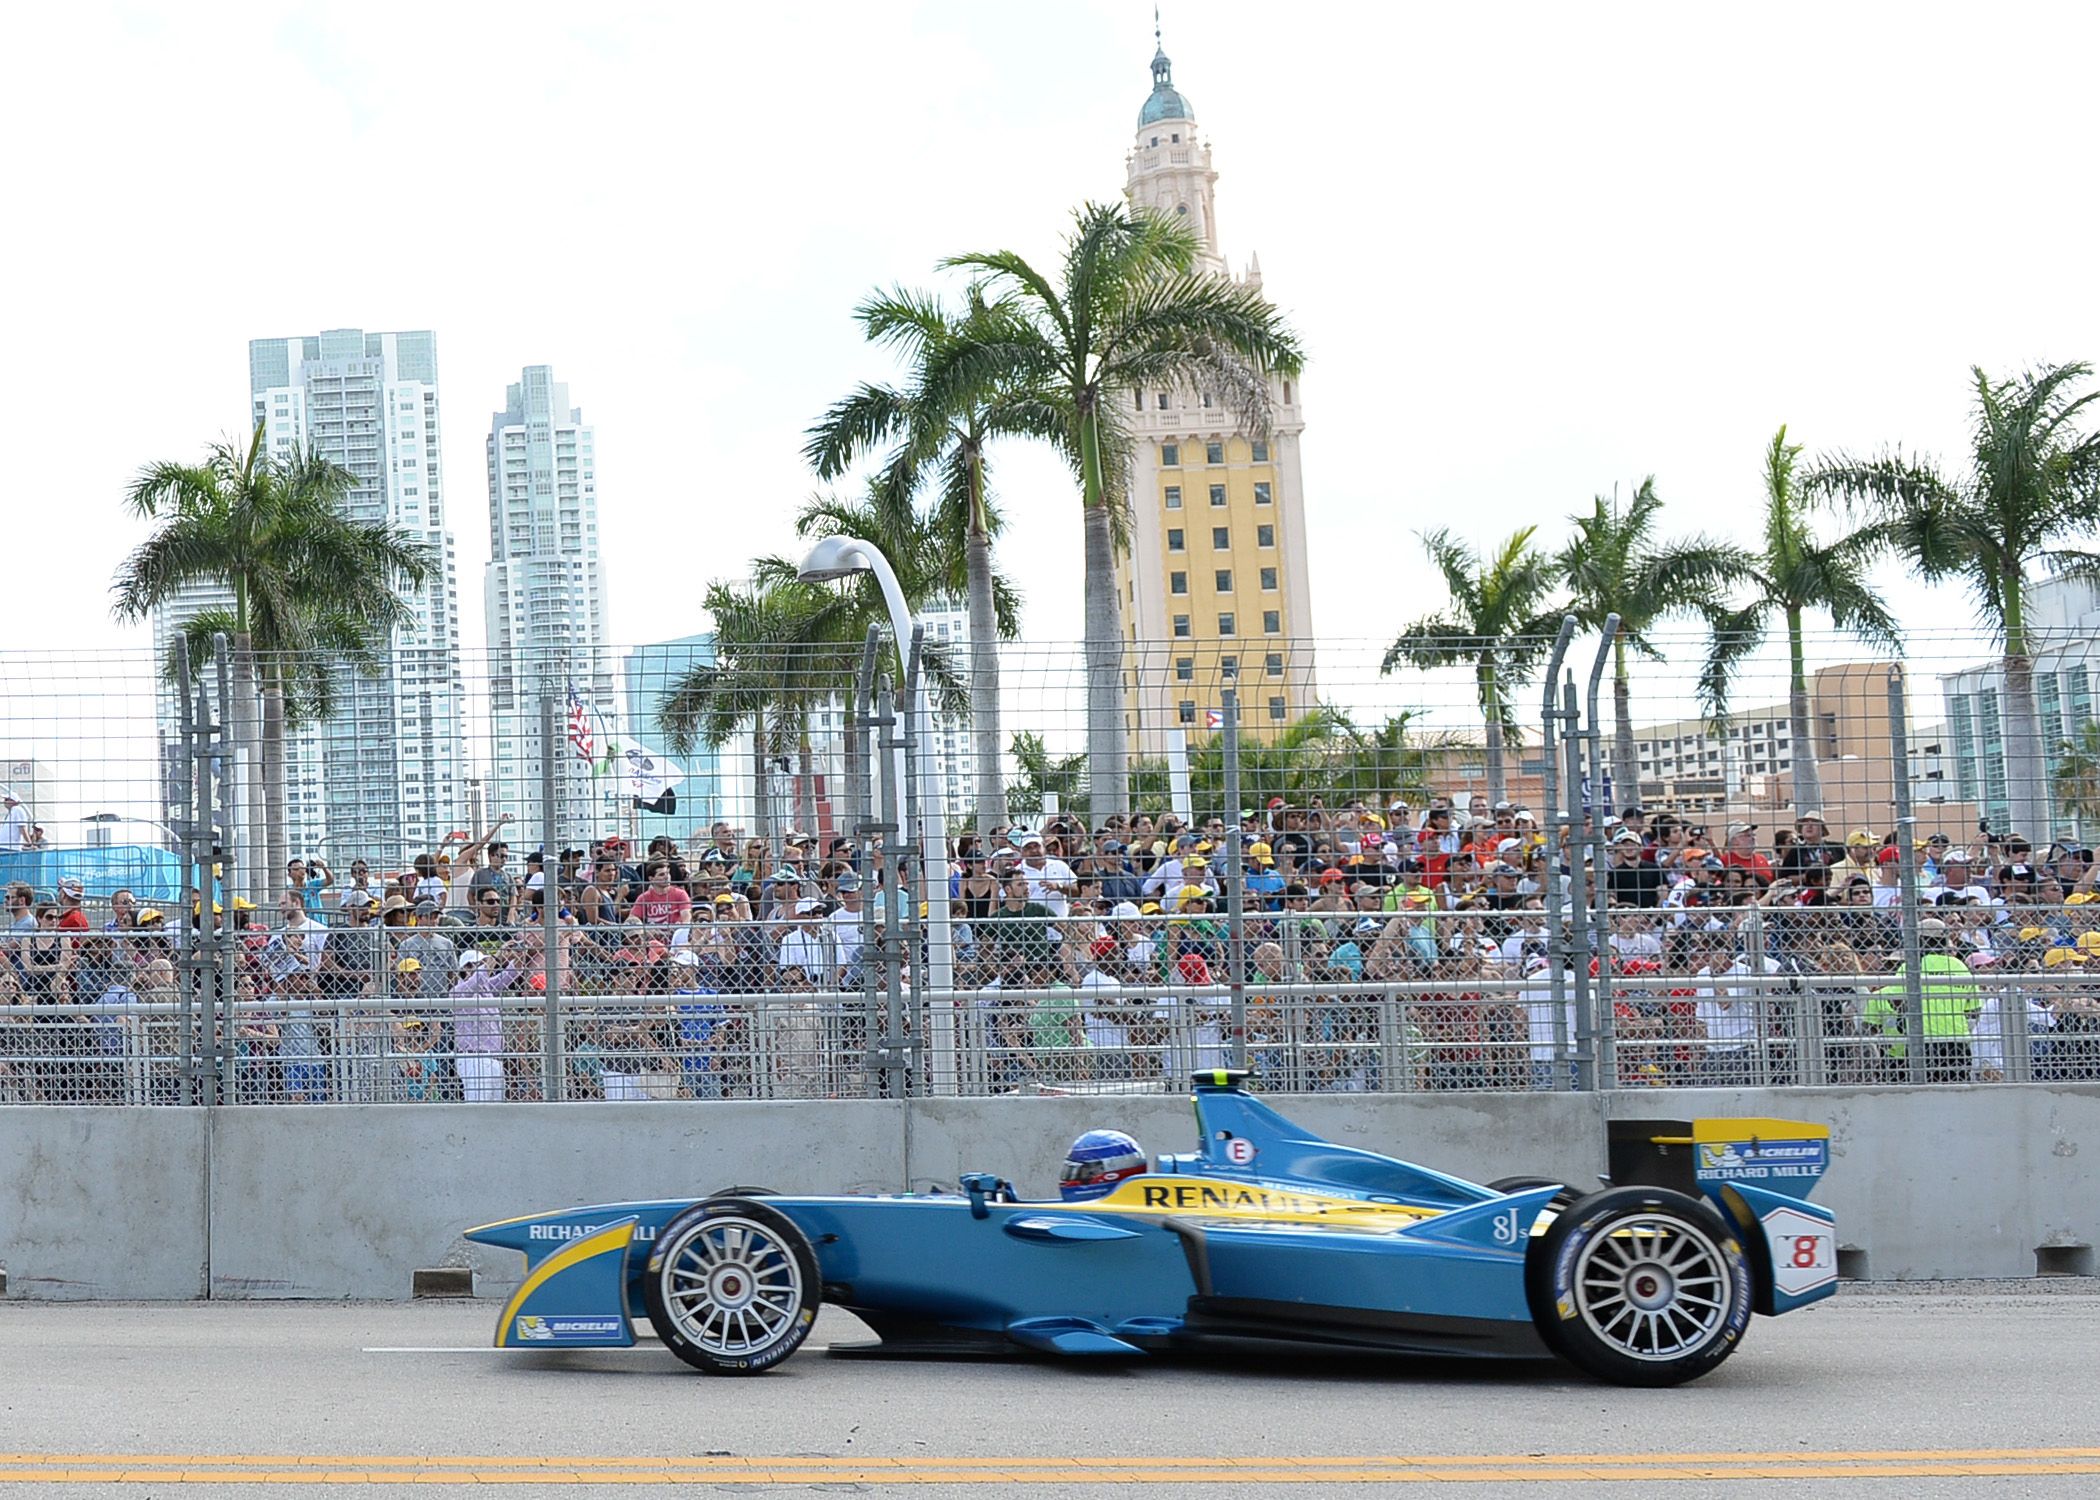 F1 Miami Grand Prix Confirmed for 2022 Formula 1 Schedule